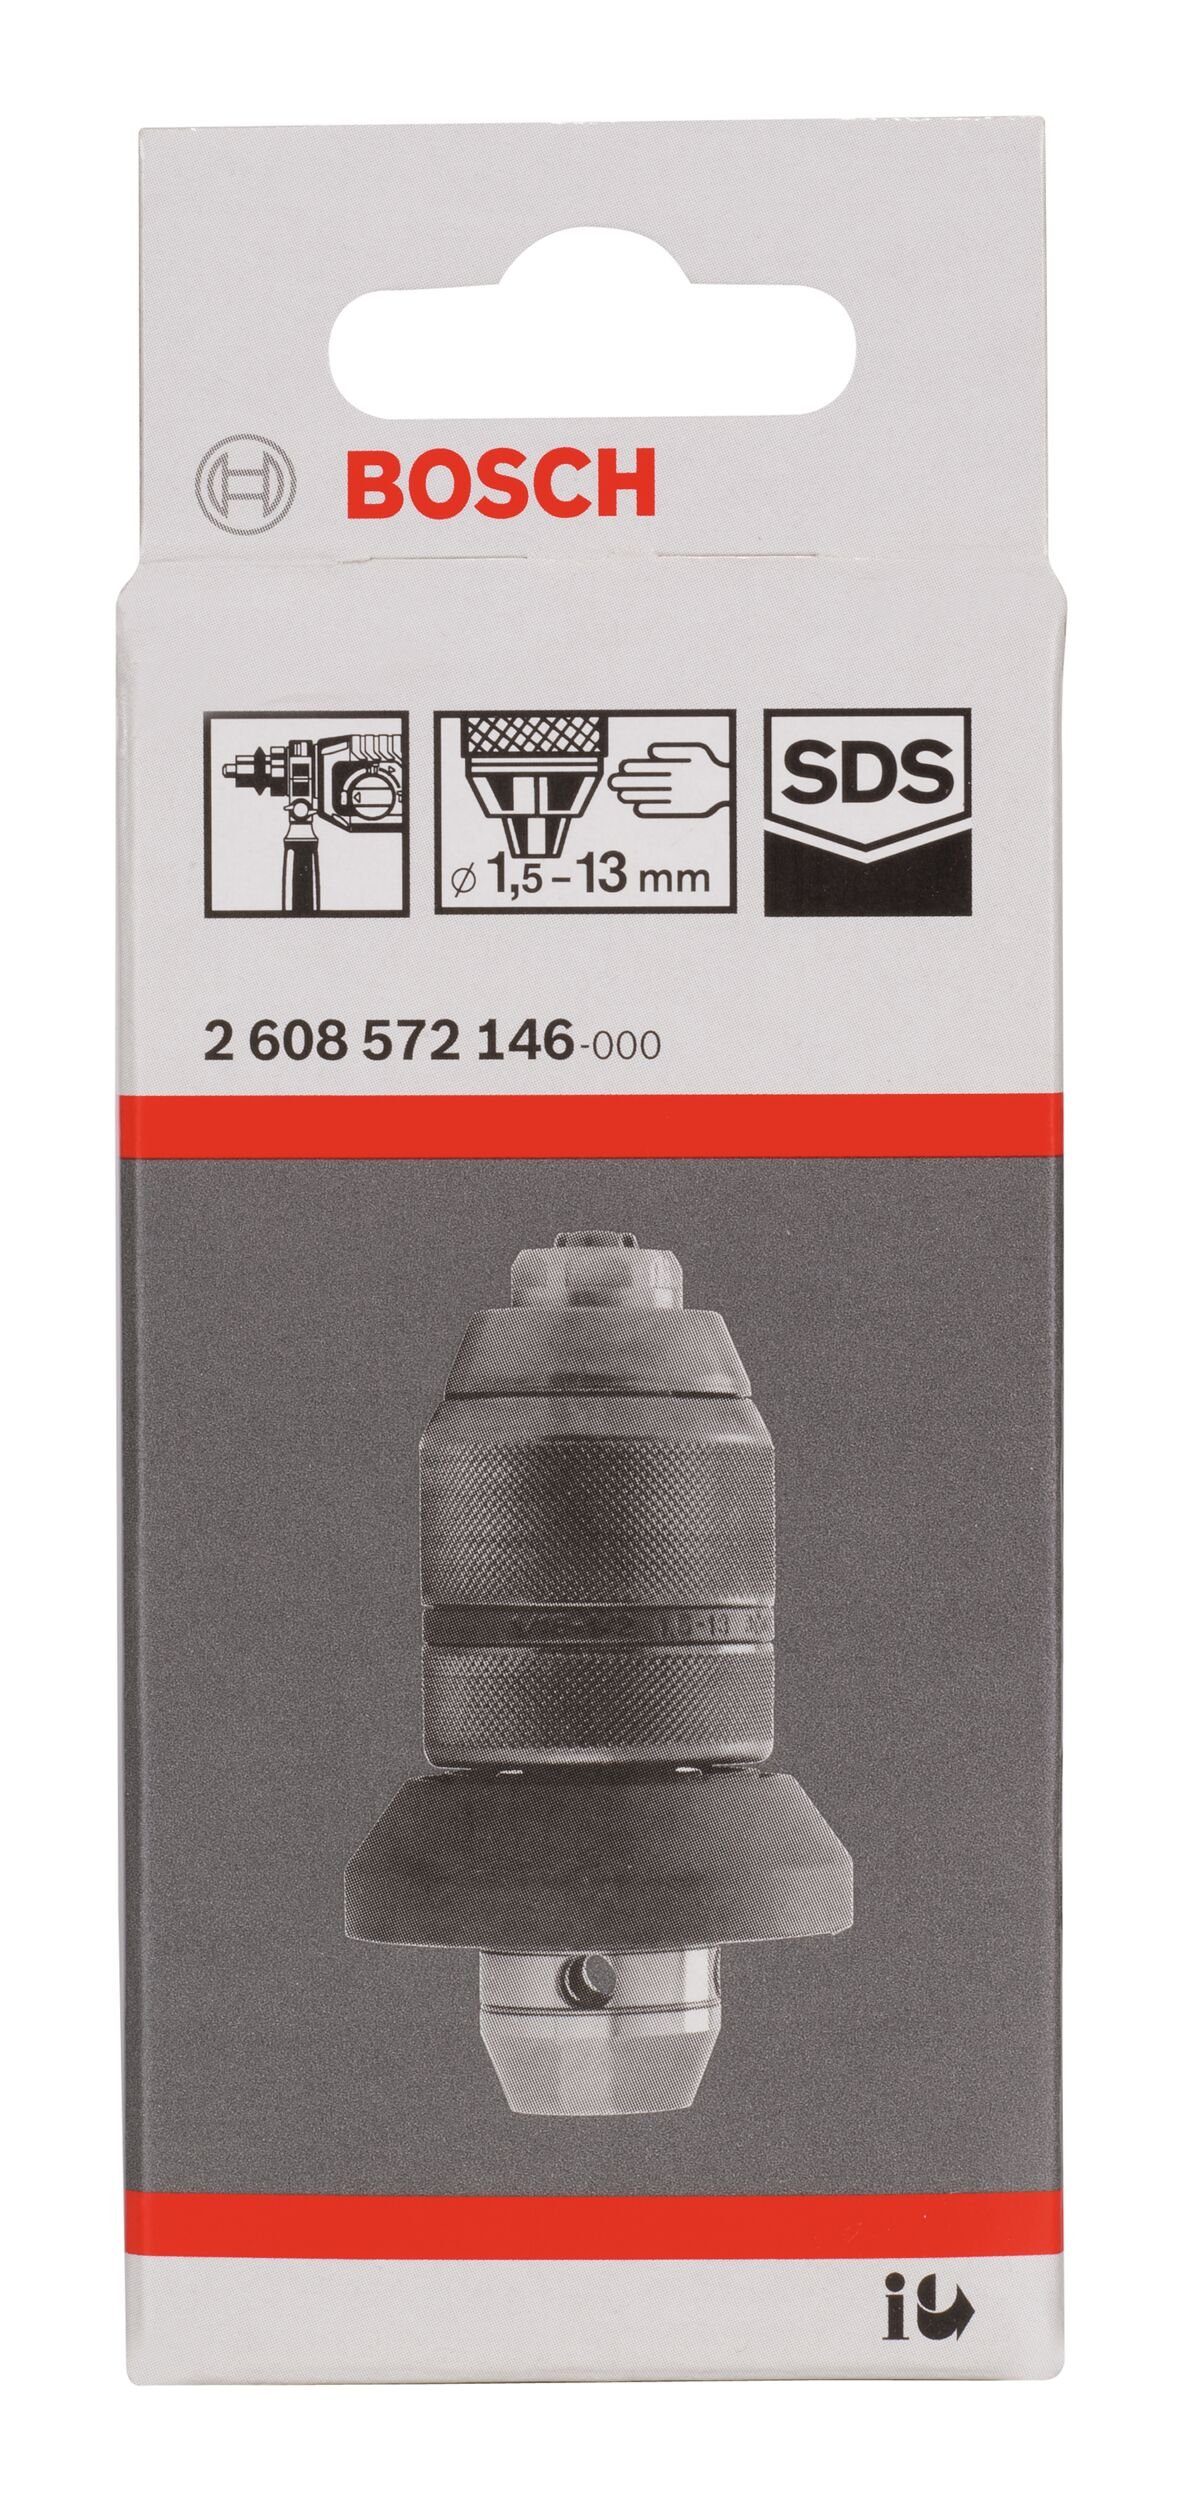 SDS 3-28 - FE m. Bohrfutter, Adapter f. BOSCH Schnellspannbohrfutter - mm 13 1,5 GBH